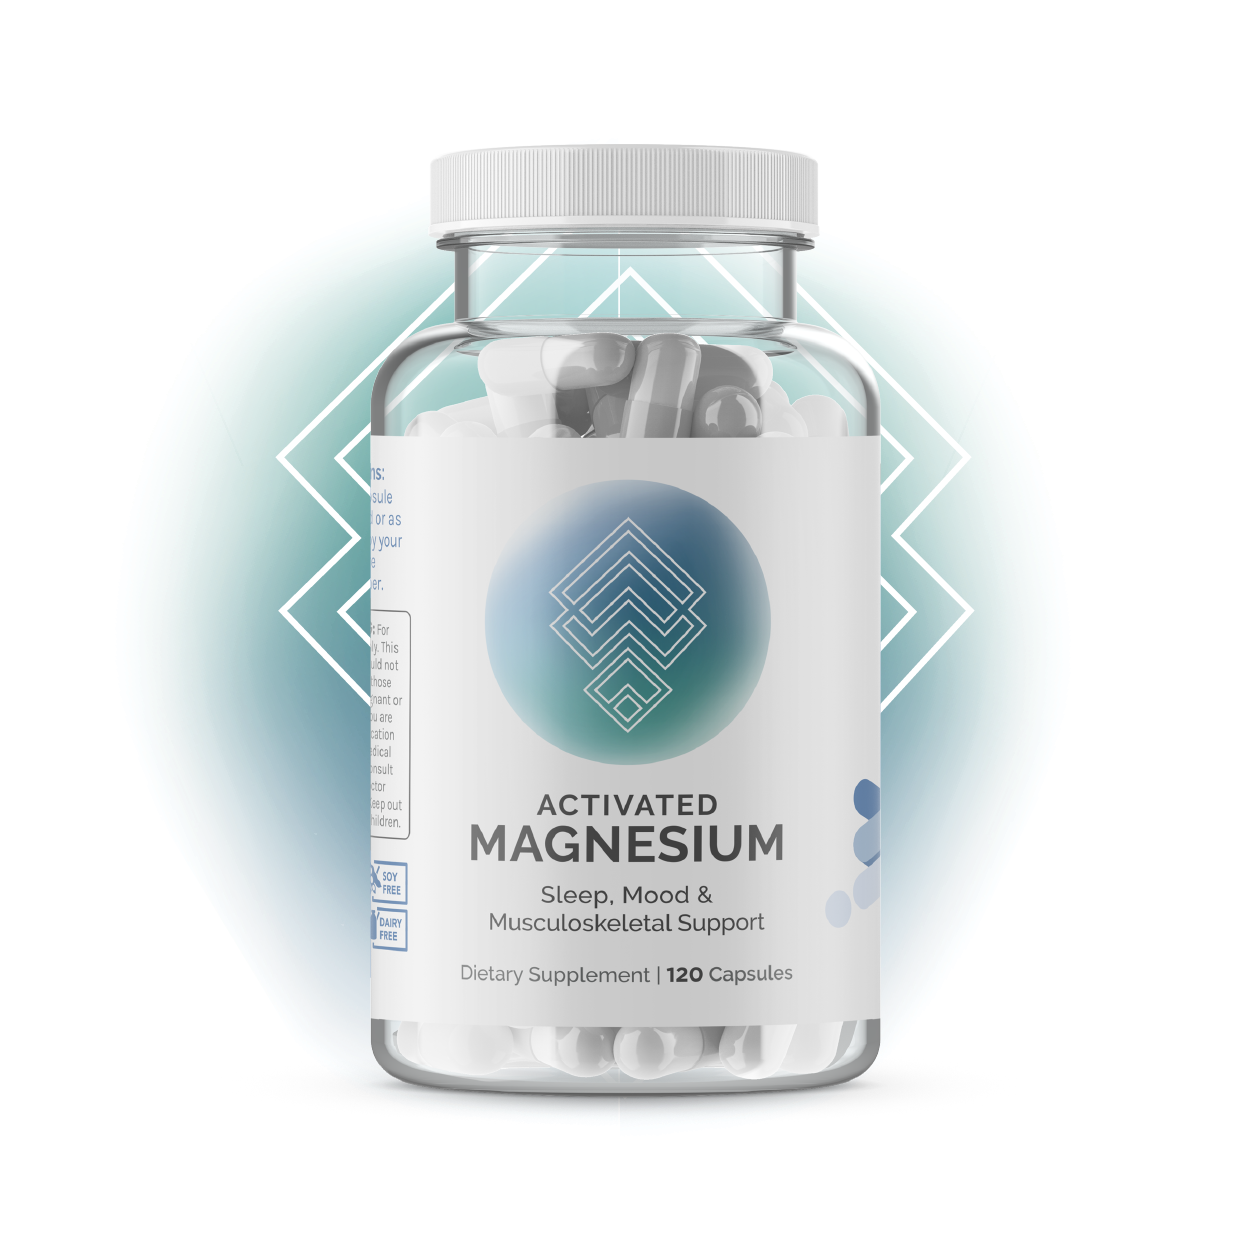 Activated Magnesium